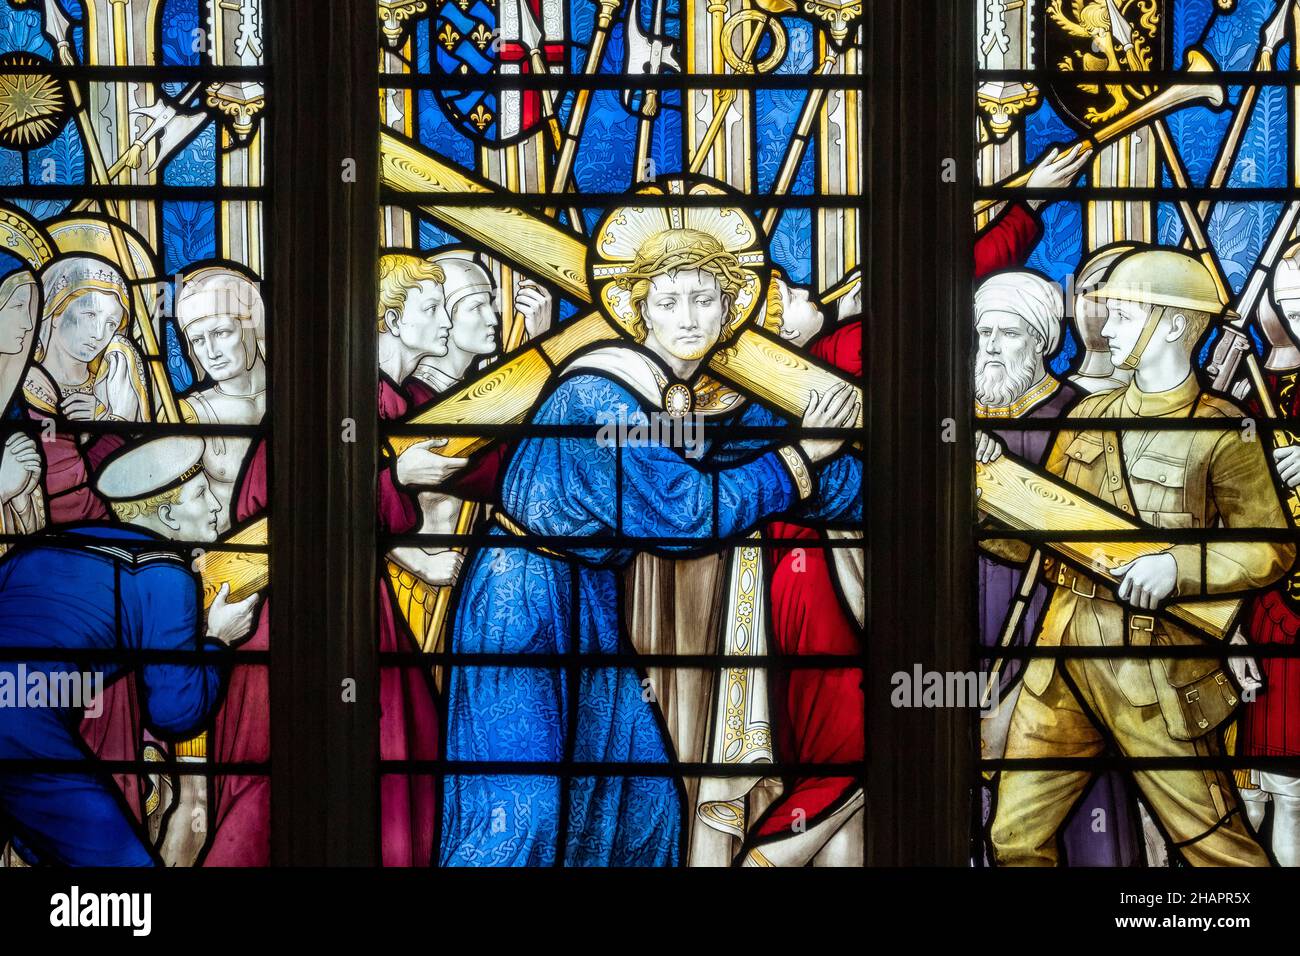 Détail de vitraux de la première Guerre mondiale par Ninian Comper 1920 Eglise de Sainte Marie de l'Assomption, Ufford, Suffolk, Royaume-Uni Banque D'Images